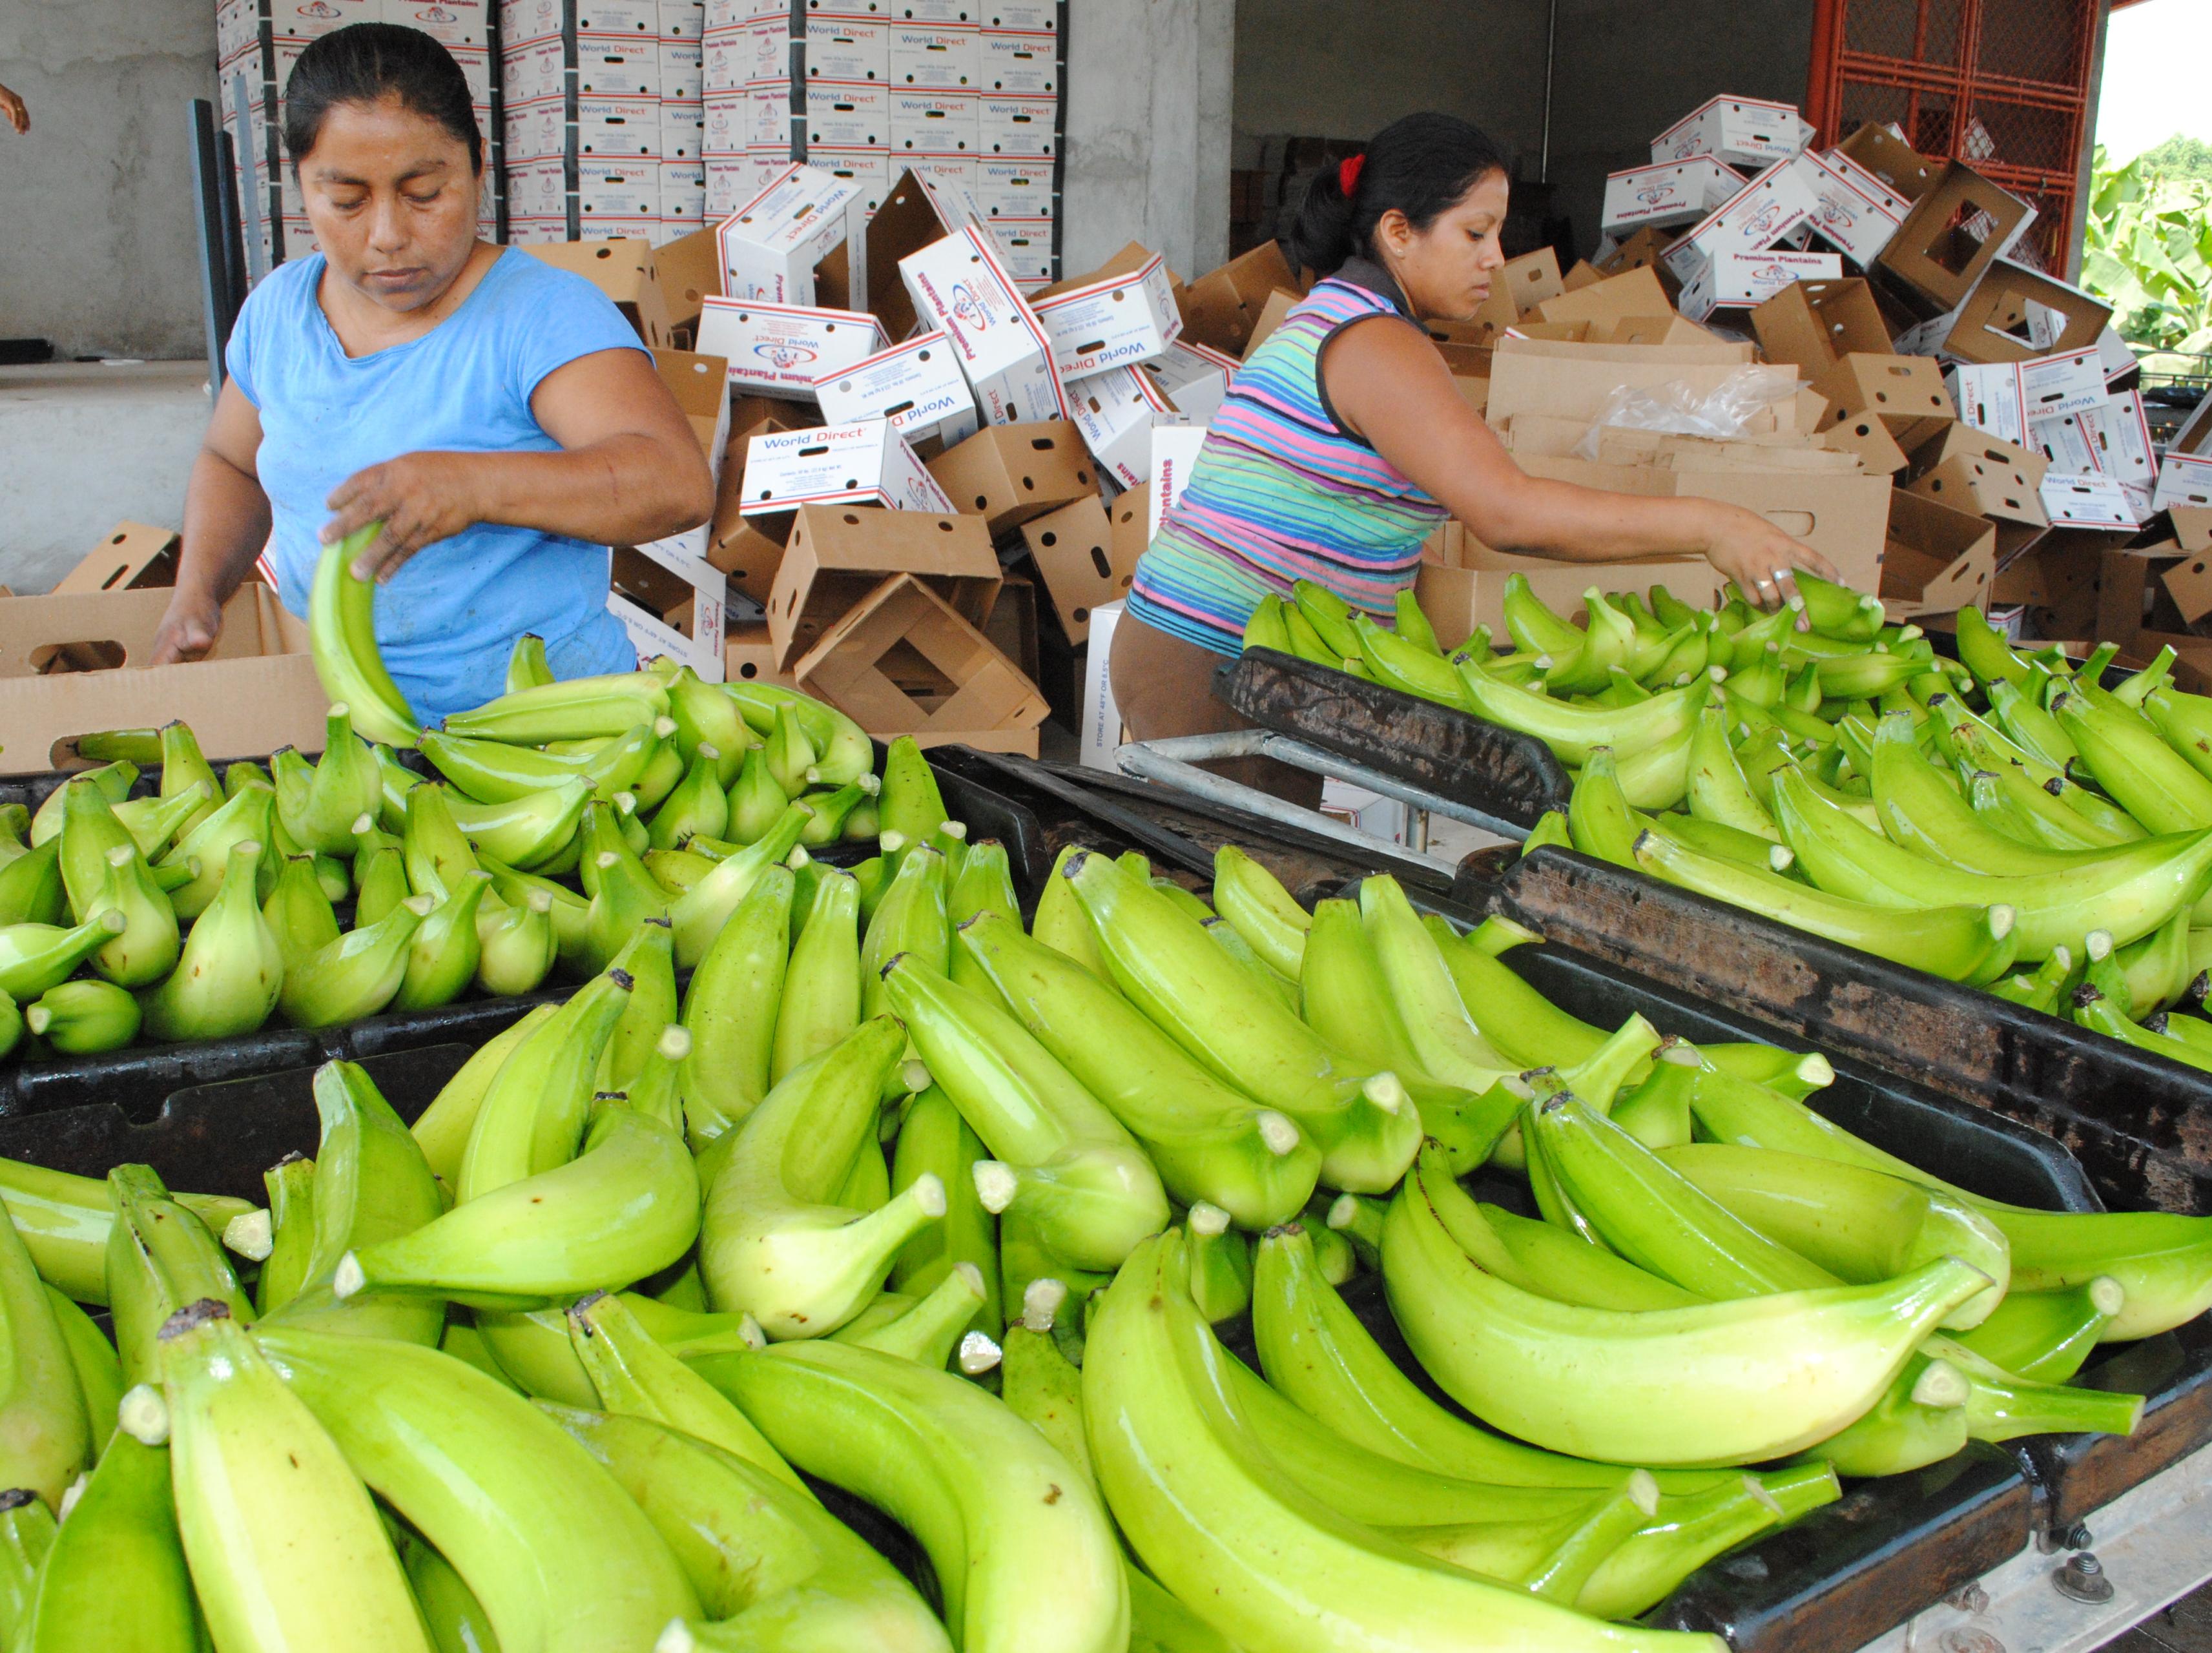 La exportación de banano alcanzó una cifra histórica de US$815 millones el año pasado, siendo el principal producto agrícola colocado en el mercado exterior. (Foto Prensa Libre: Hemeroteca)